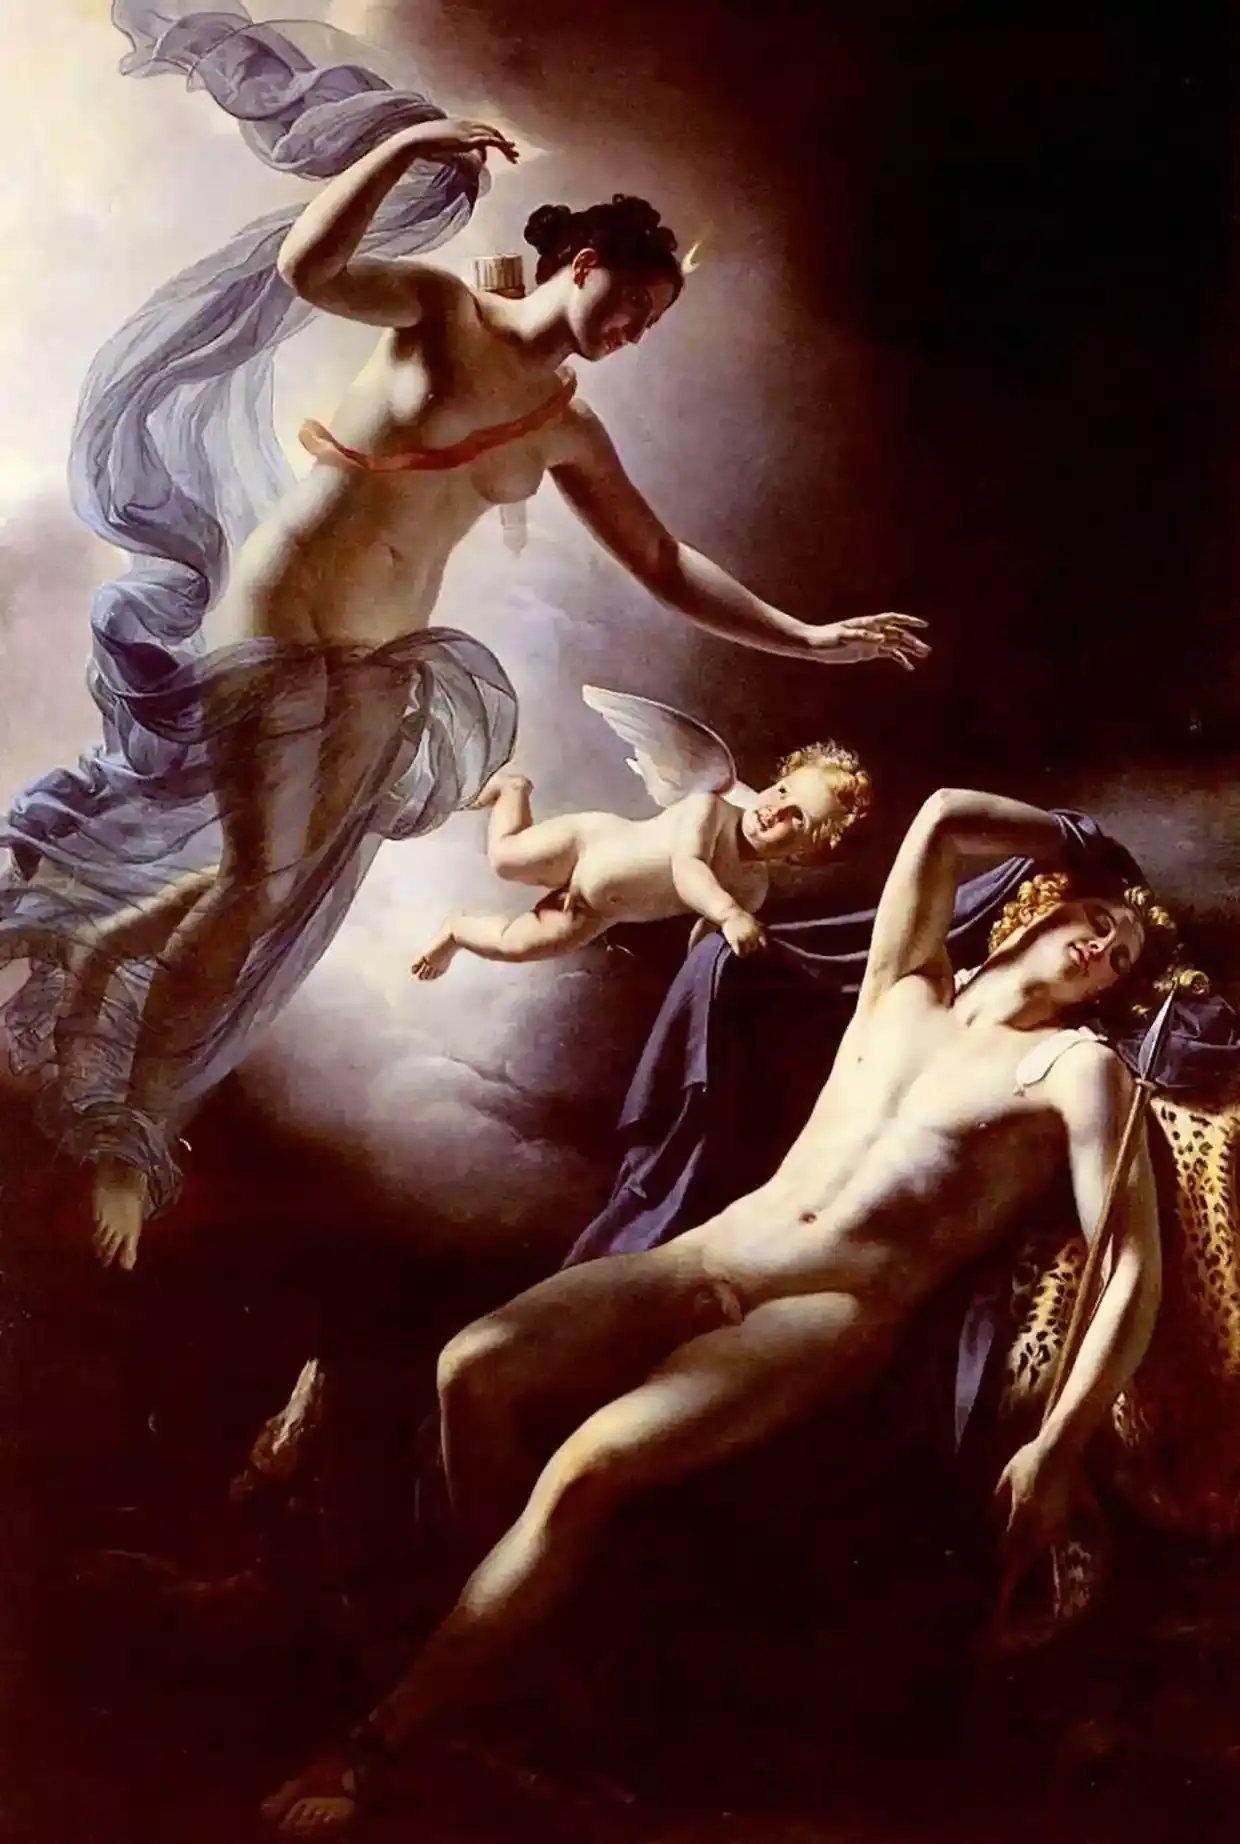 Ο Ενδυμίων στον αιώνιο, αγέραστο ύπνο του στο έργο του Ζερόμ-Μαρντέν Λανγκλουά «Άρτεμις και Ενδυμίων», 1822